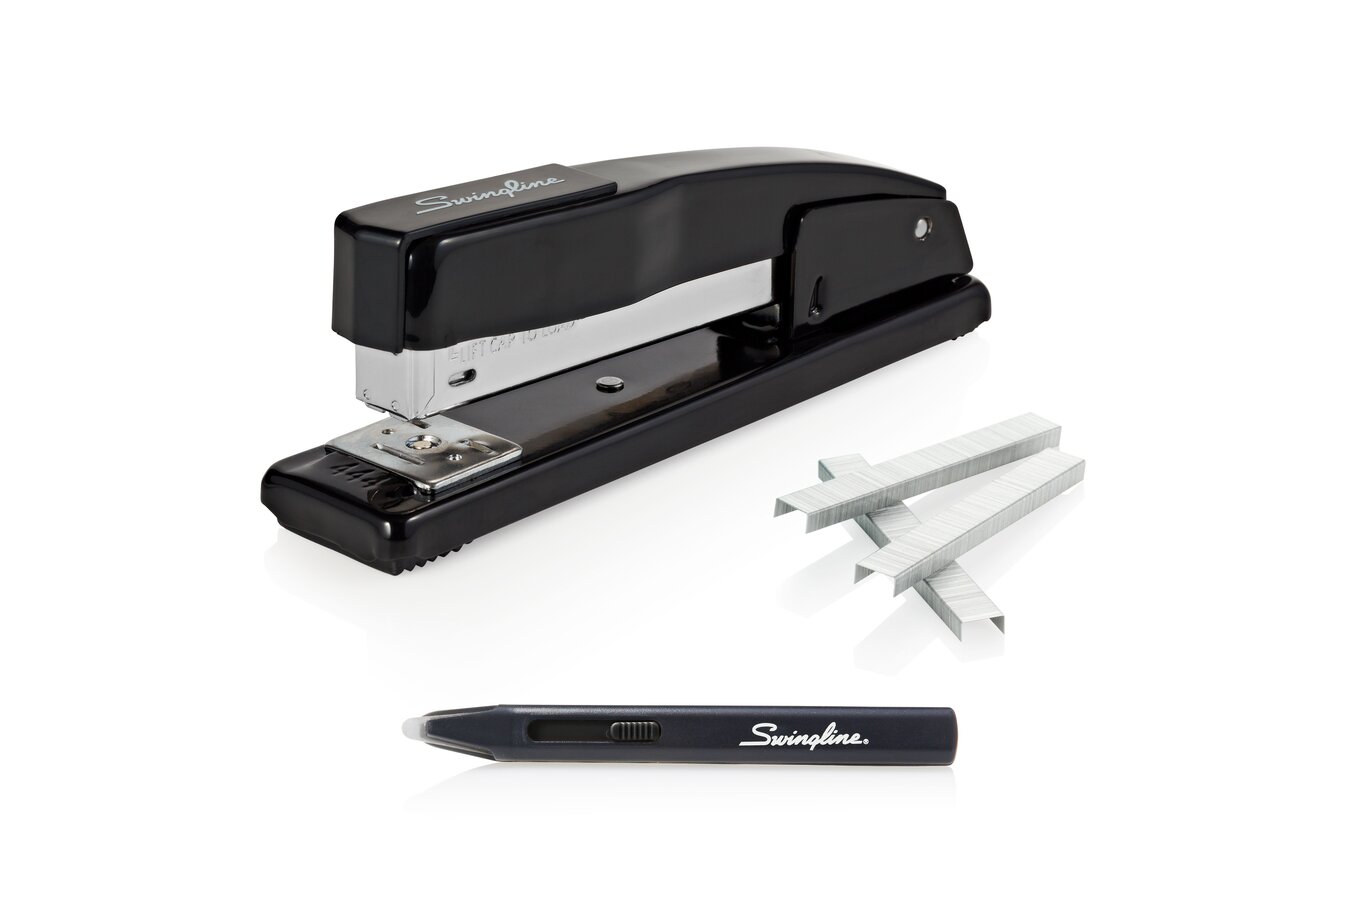 Swingline Standard Desk Stapler Bonus Pack w/ Remover and staples